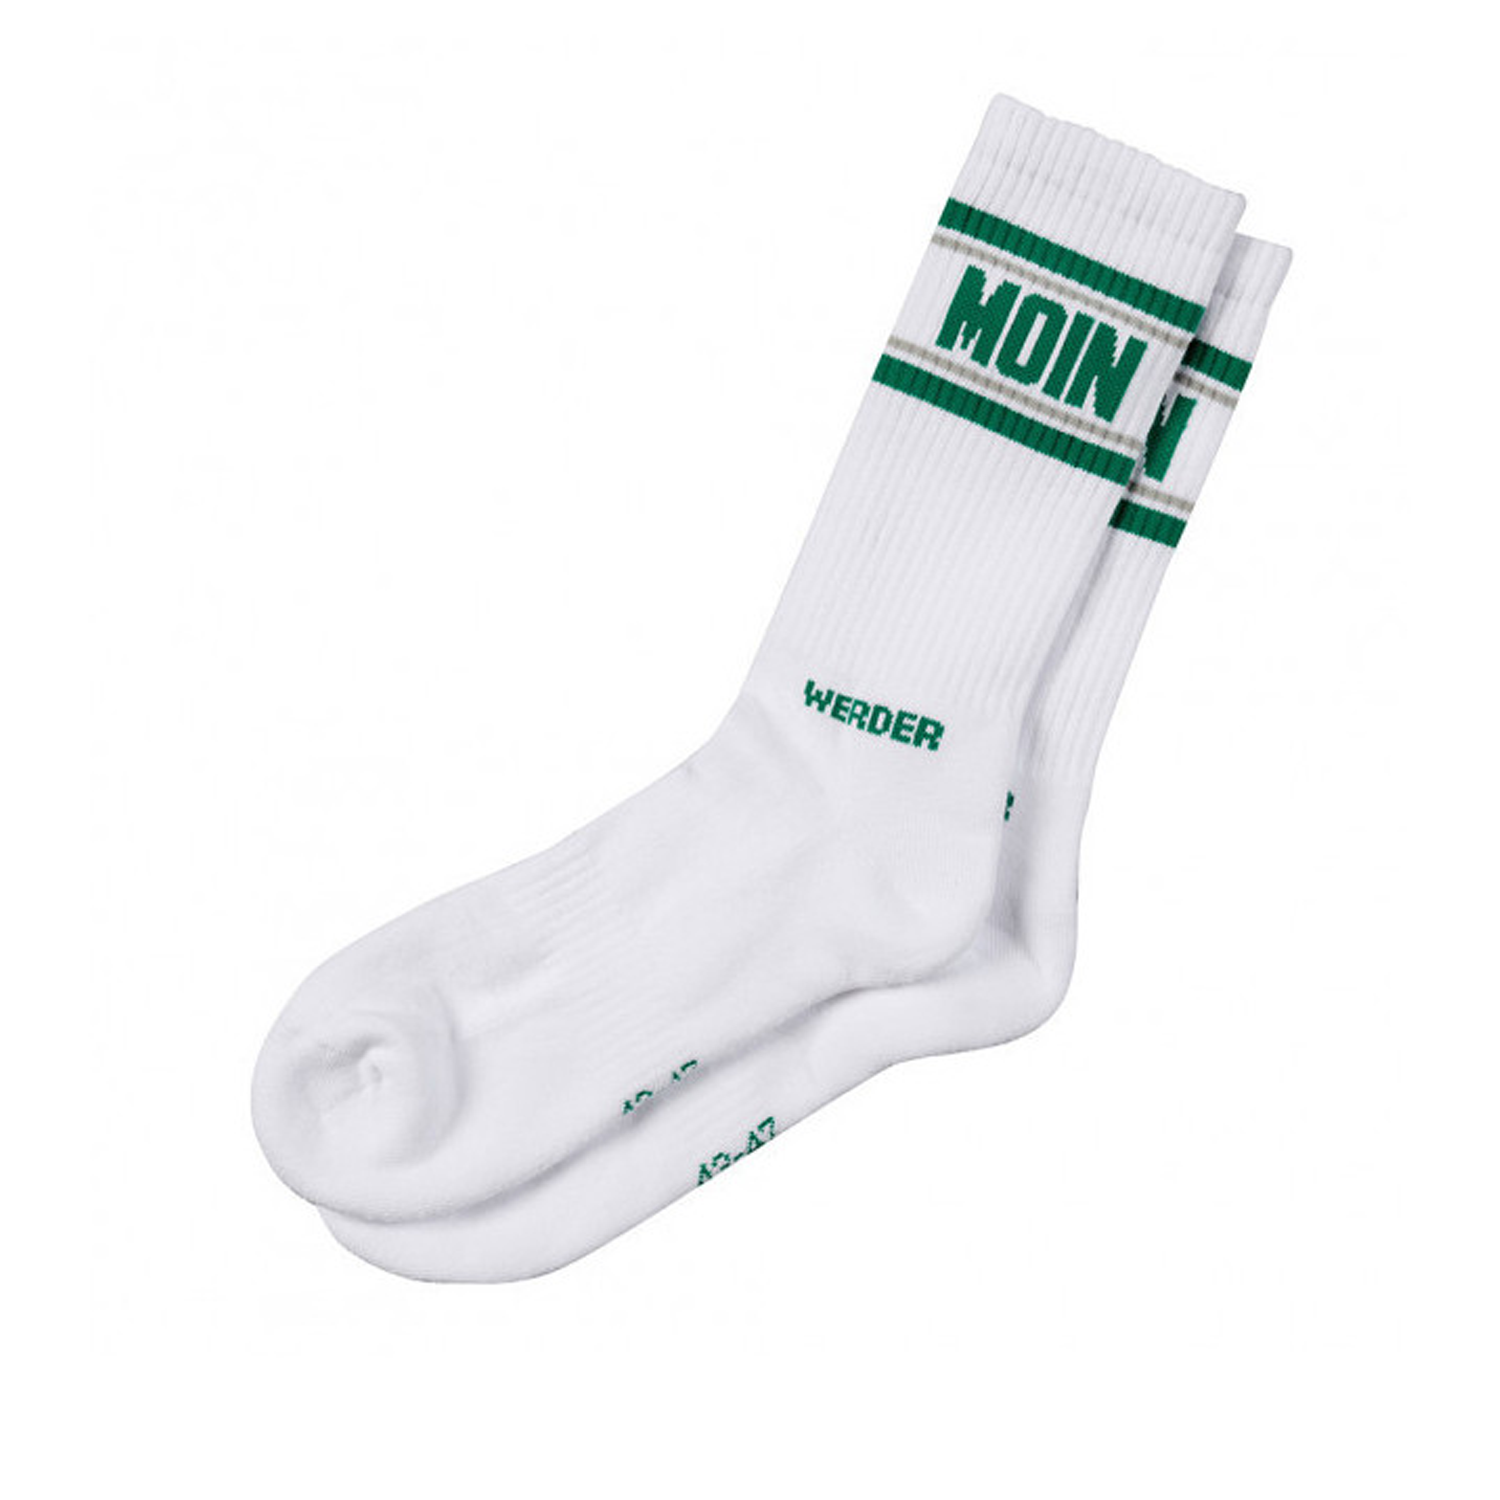 SV Werder Bremen Tube Socks "Moin" - weiß